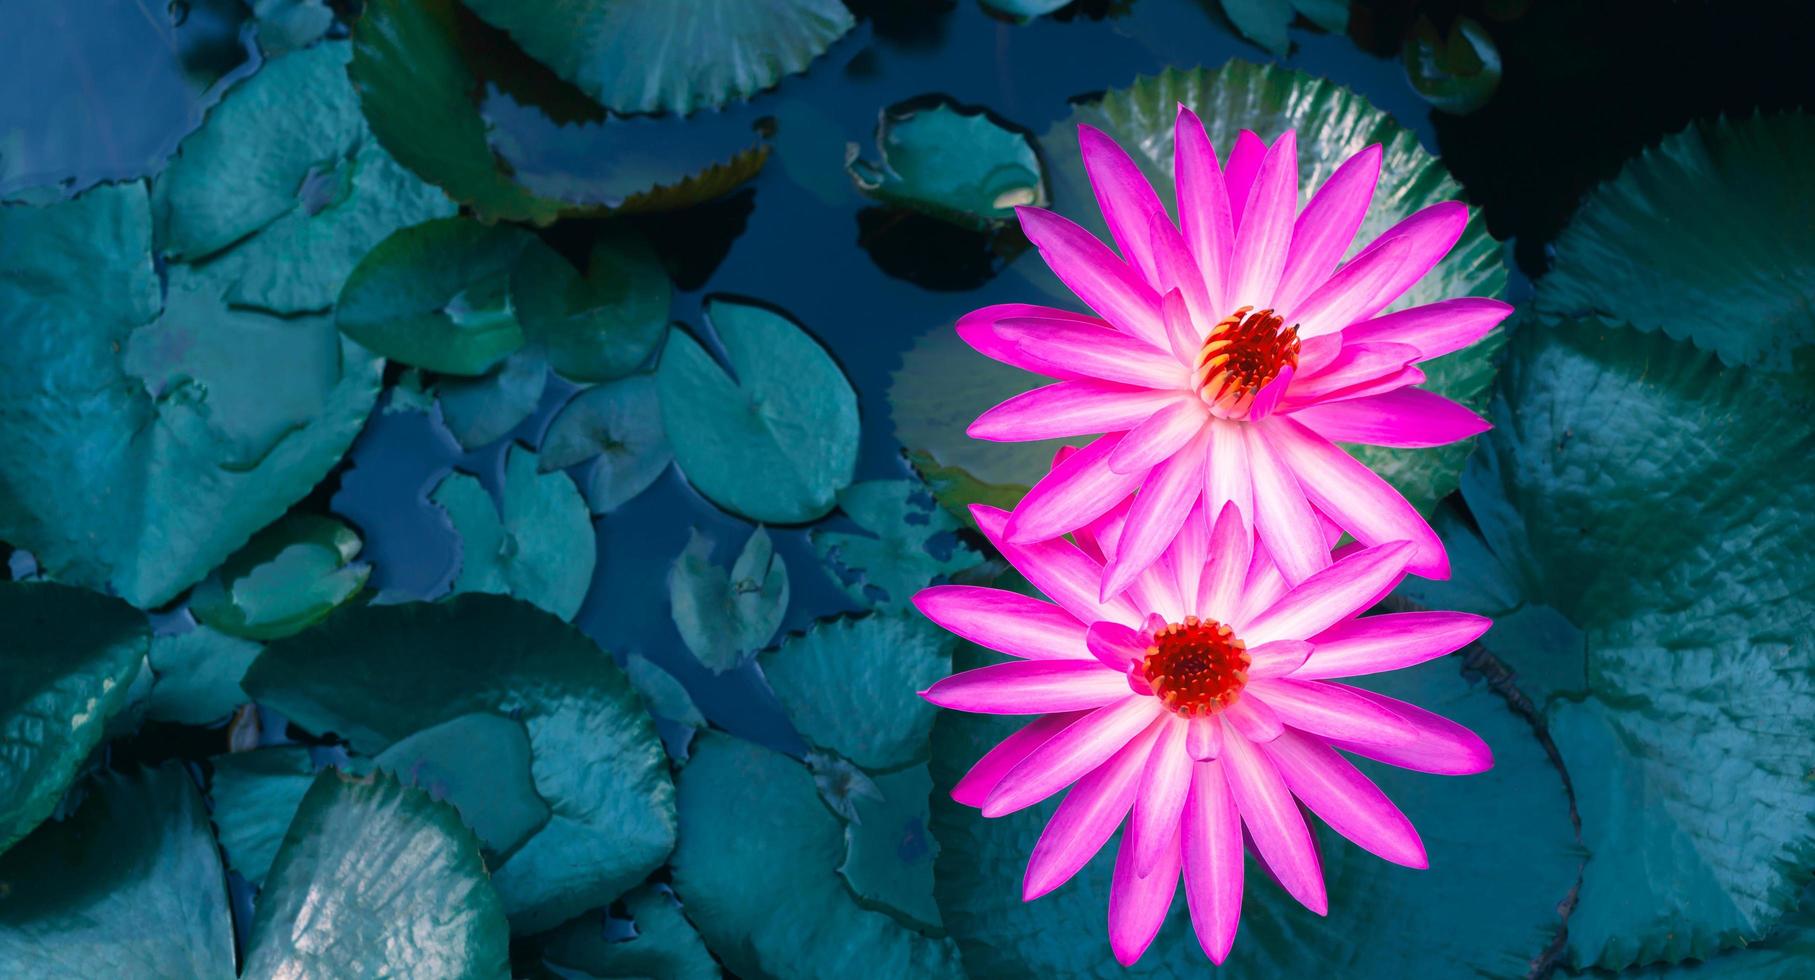 närbild av skön rosa näckros och lotus blad i de blå damm.lotus blomma bakgrund foto